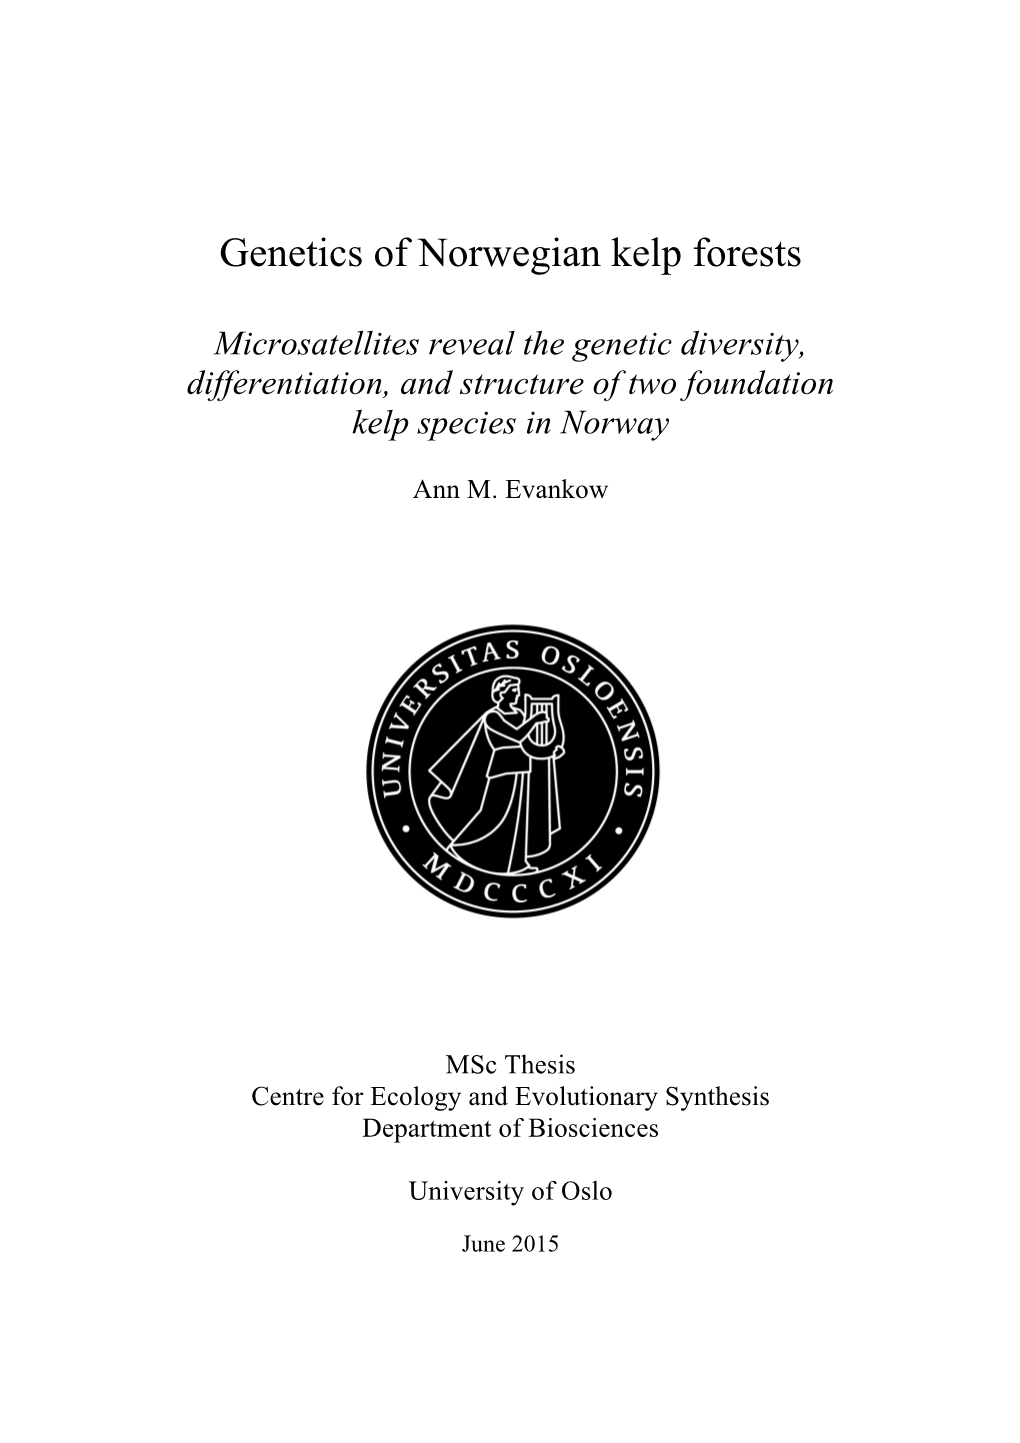 Genetics of Norwegian Kelp Forests